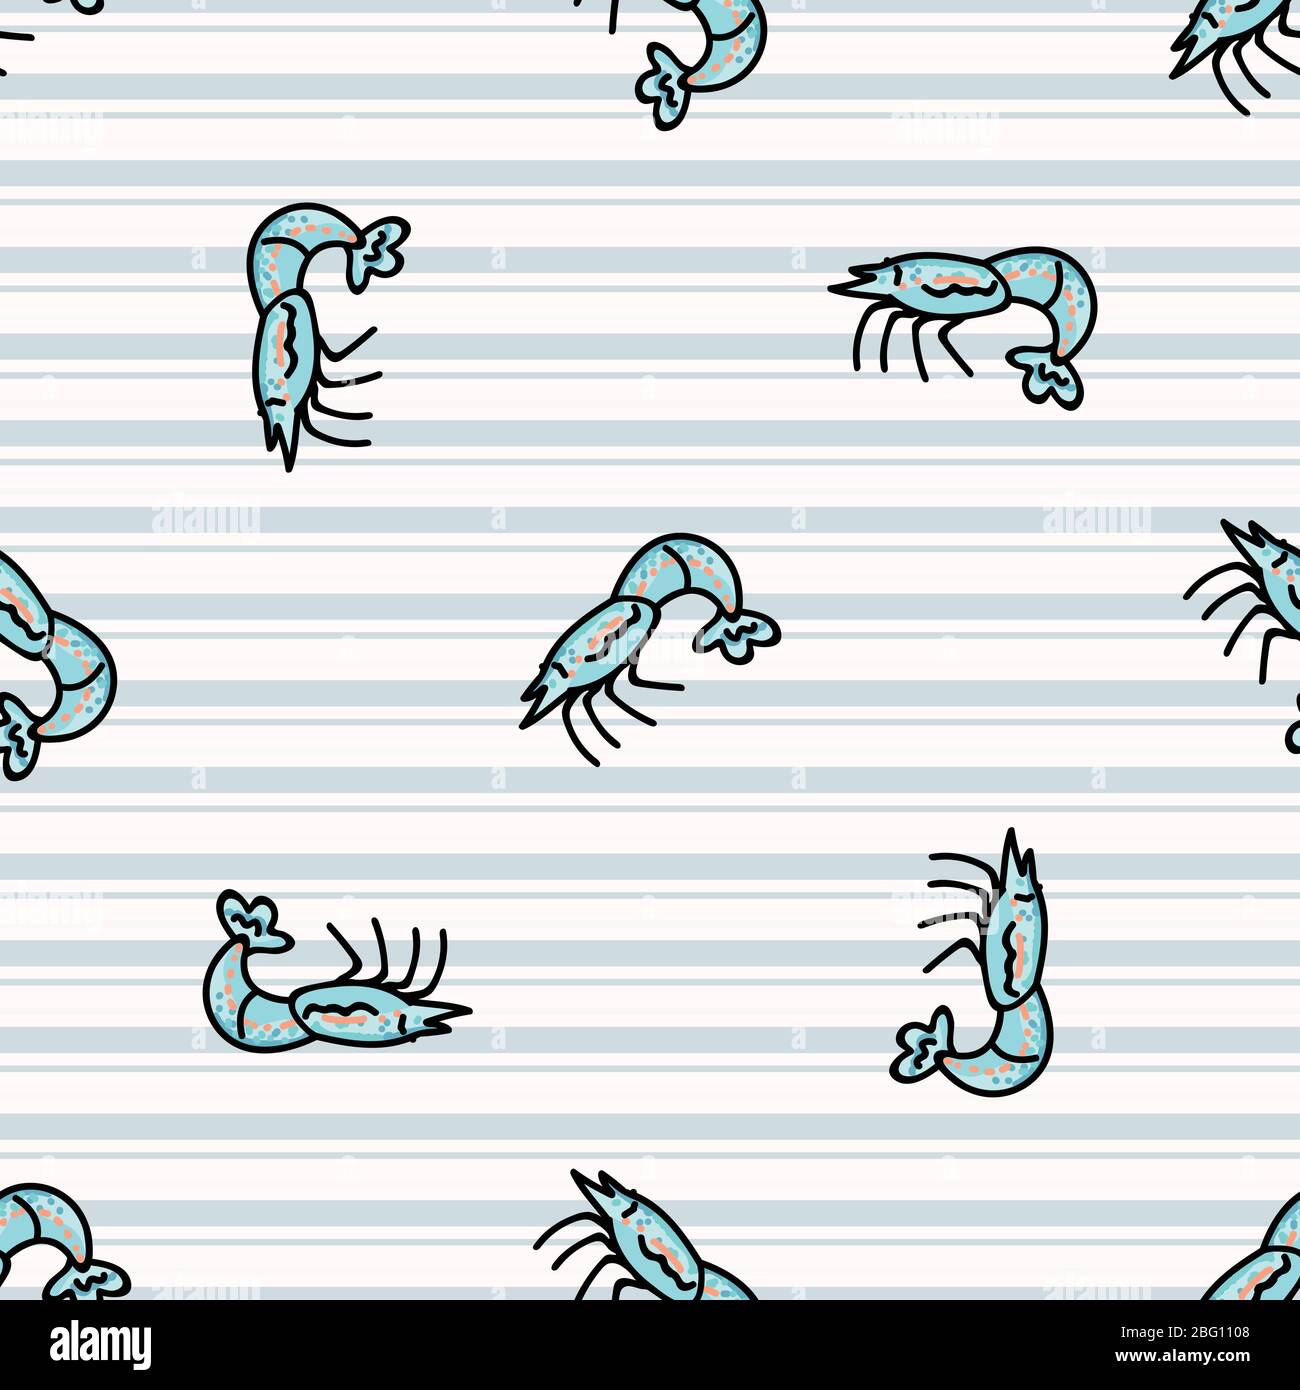 Nette blaue Garnelen Cartoon nahtlose Vektor-Muster. Handgezeichnete Krustentiere für marine Leben Blog. Garnelenarthropod auf der ganzen Seite gedruckt. Tierwelt im Meer Stock Vektor